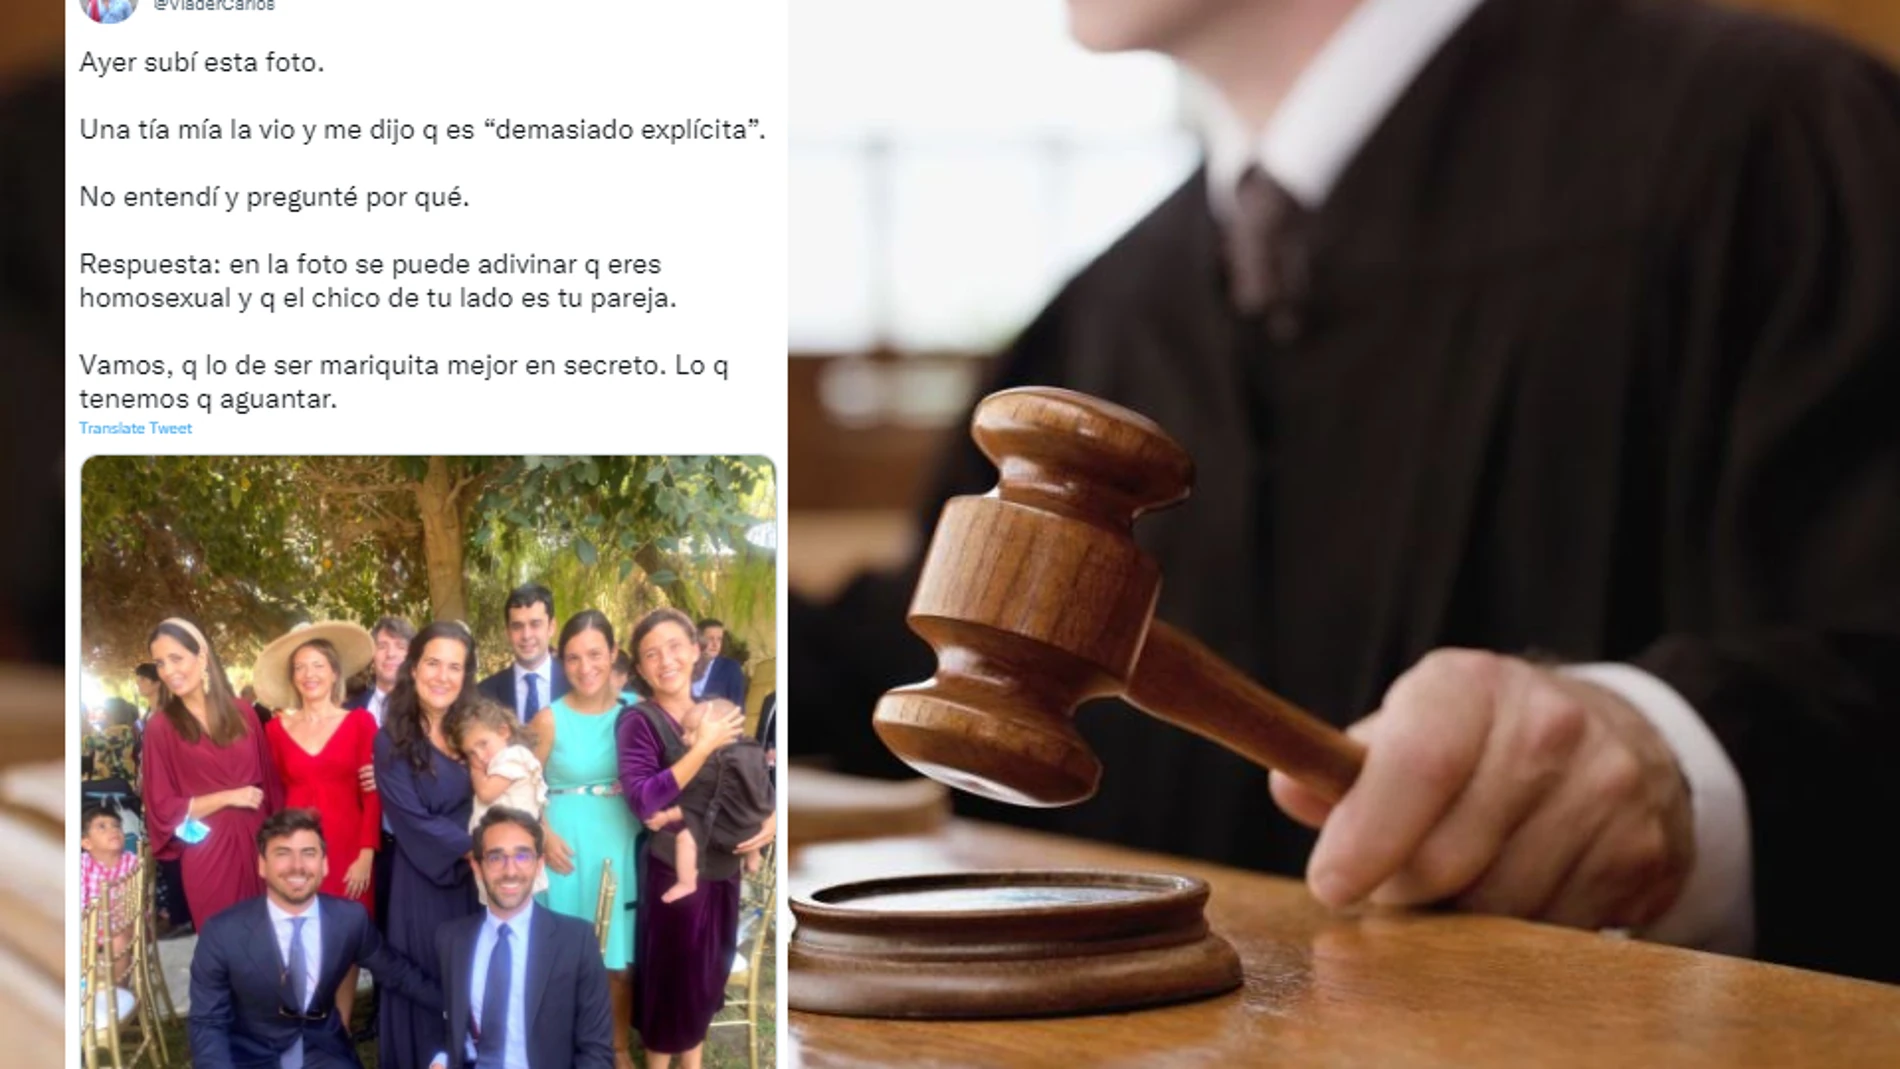 Un juez dicta sentencia sobre un comentario homófobo y triunfa en Twitter